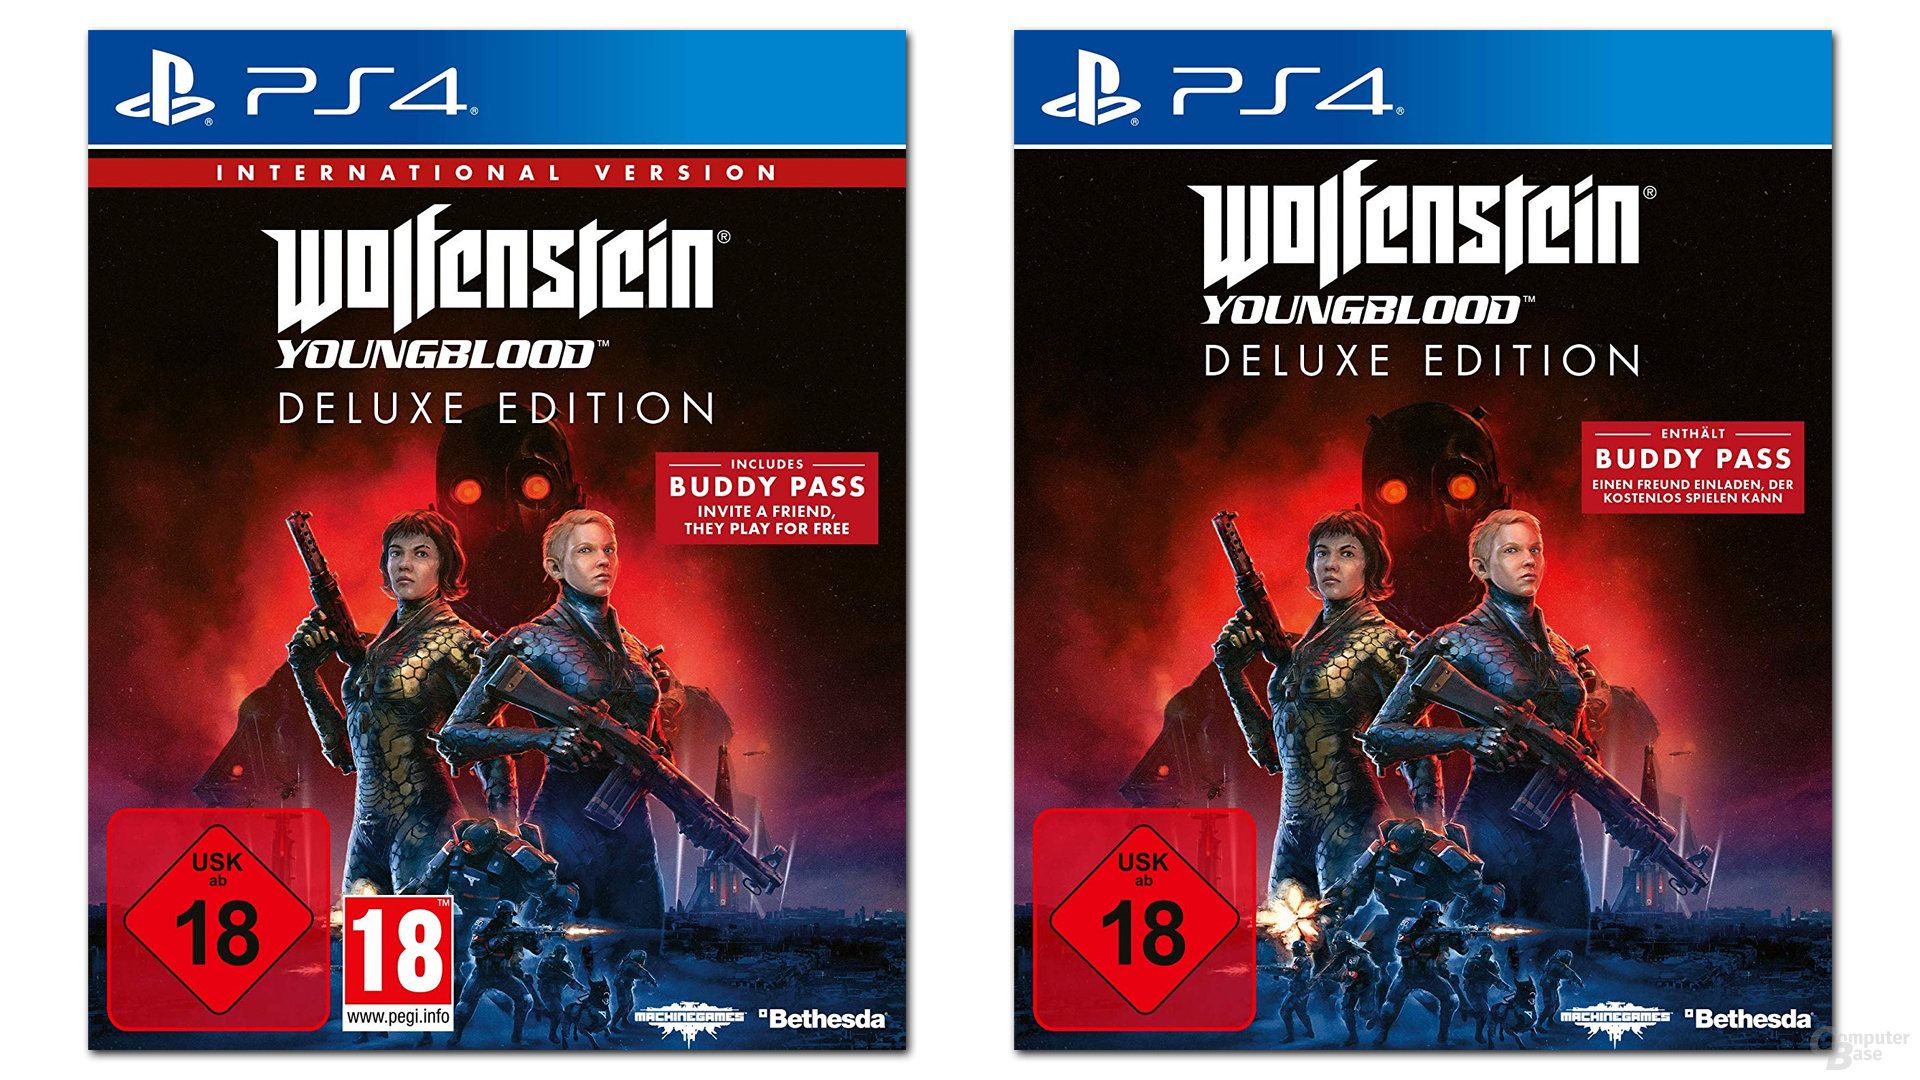 Internationella och tyska versioner av Wolfenstein: Youngblood